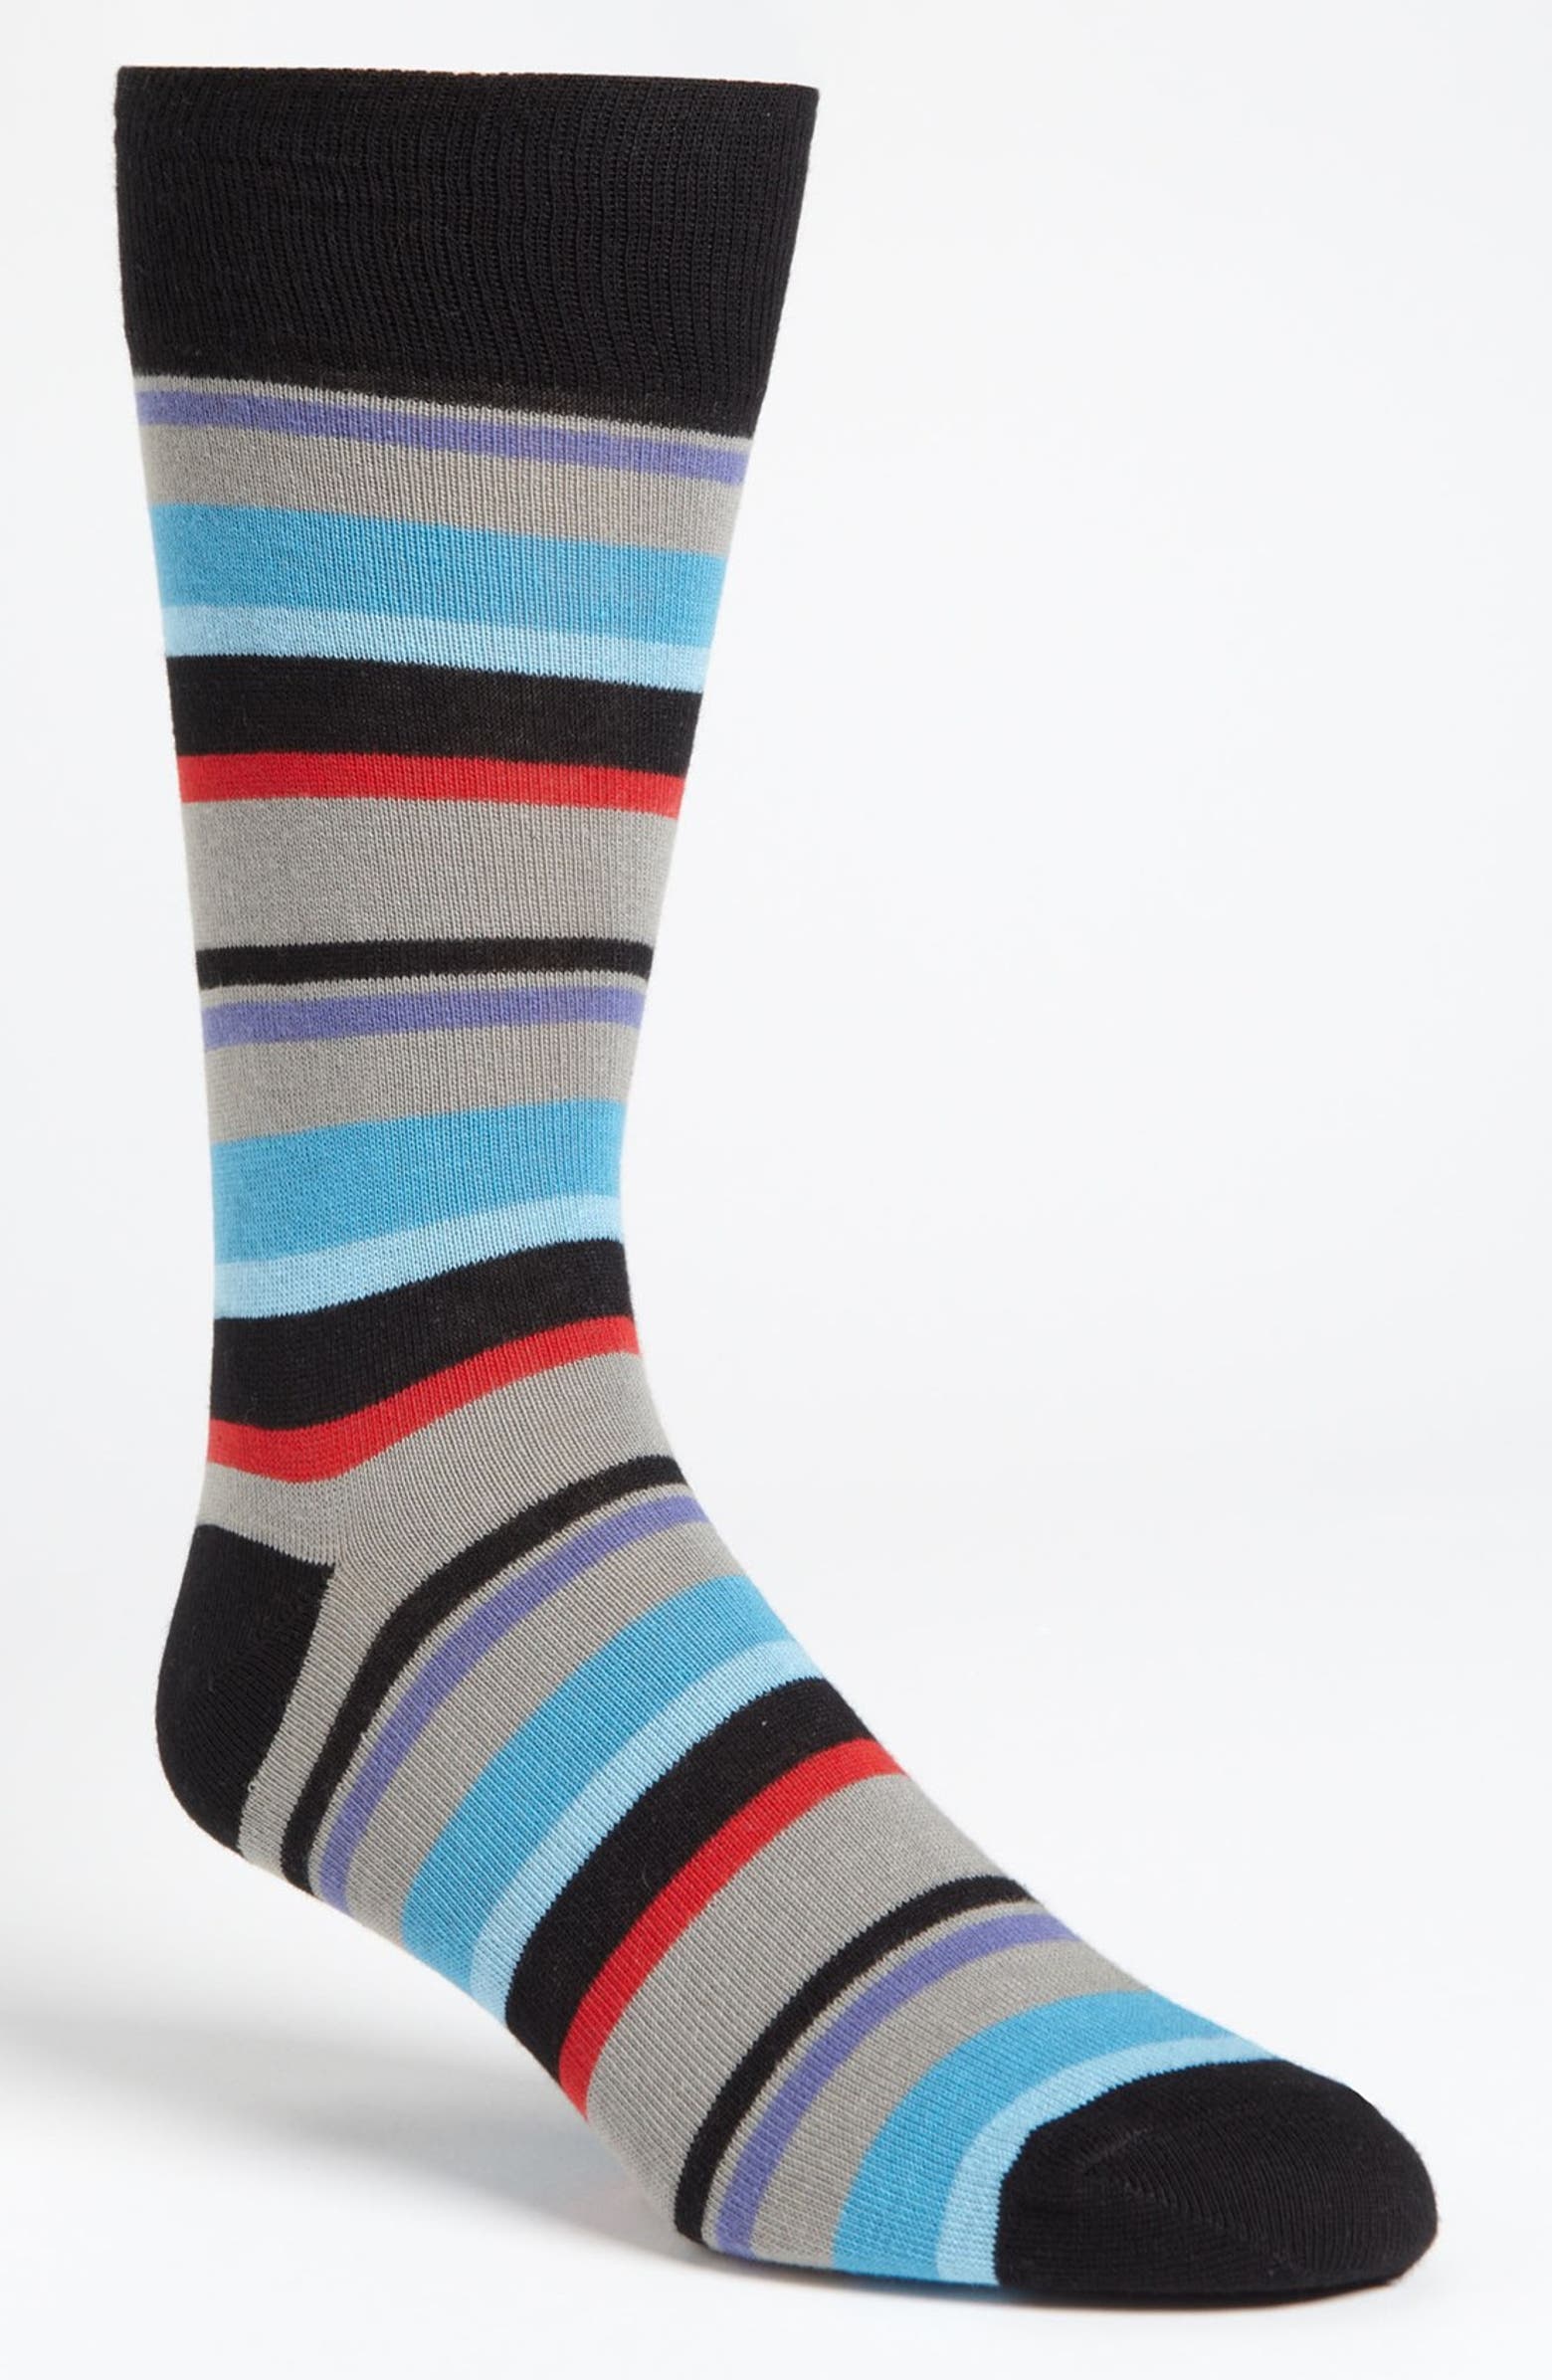 Lorenzo Uomo Multistripe Socks | Nordstrom